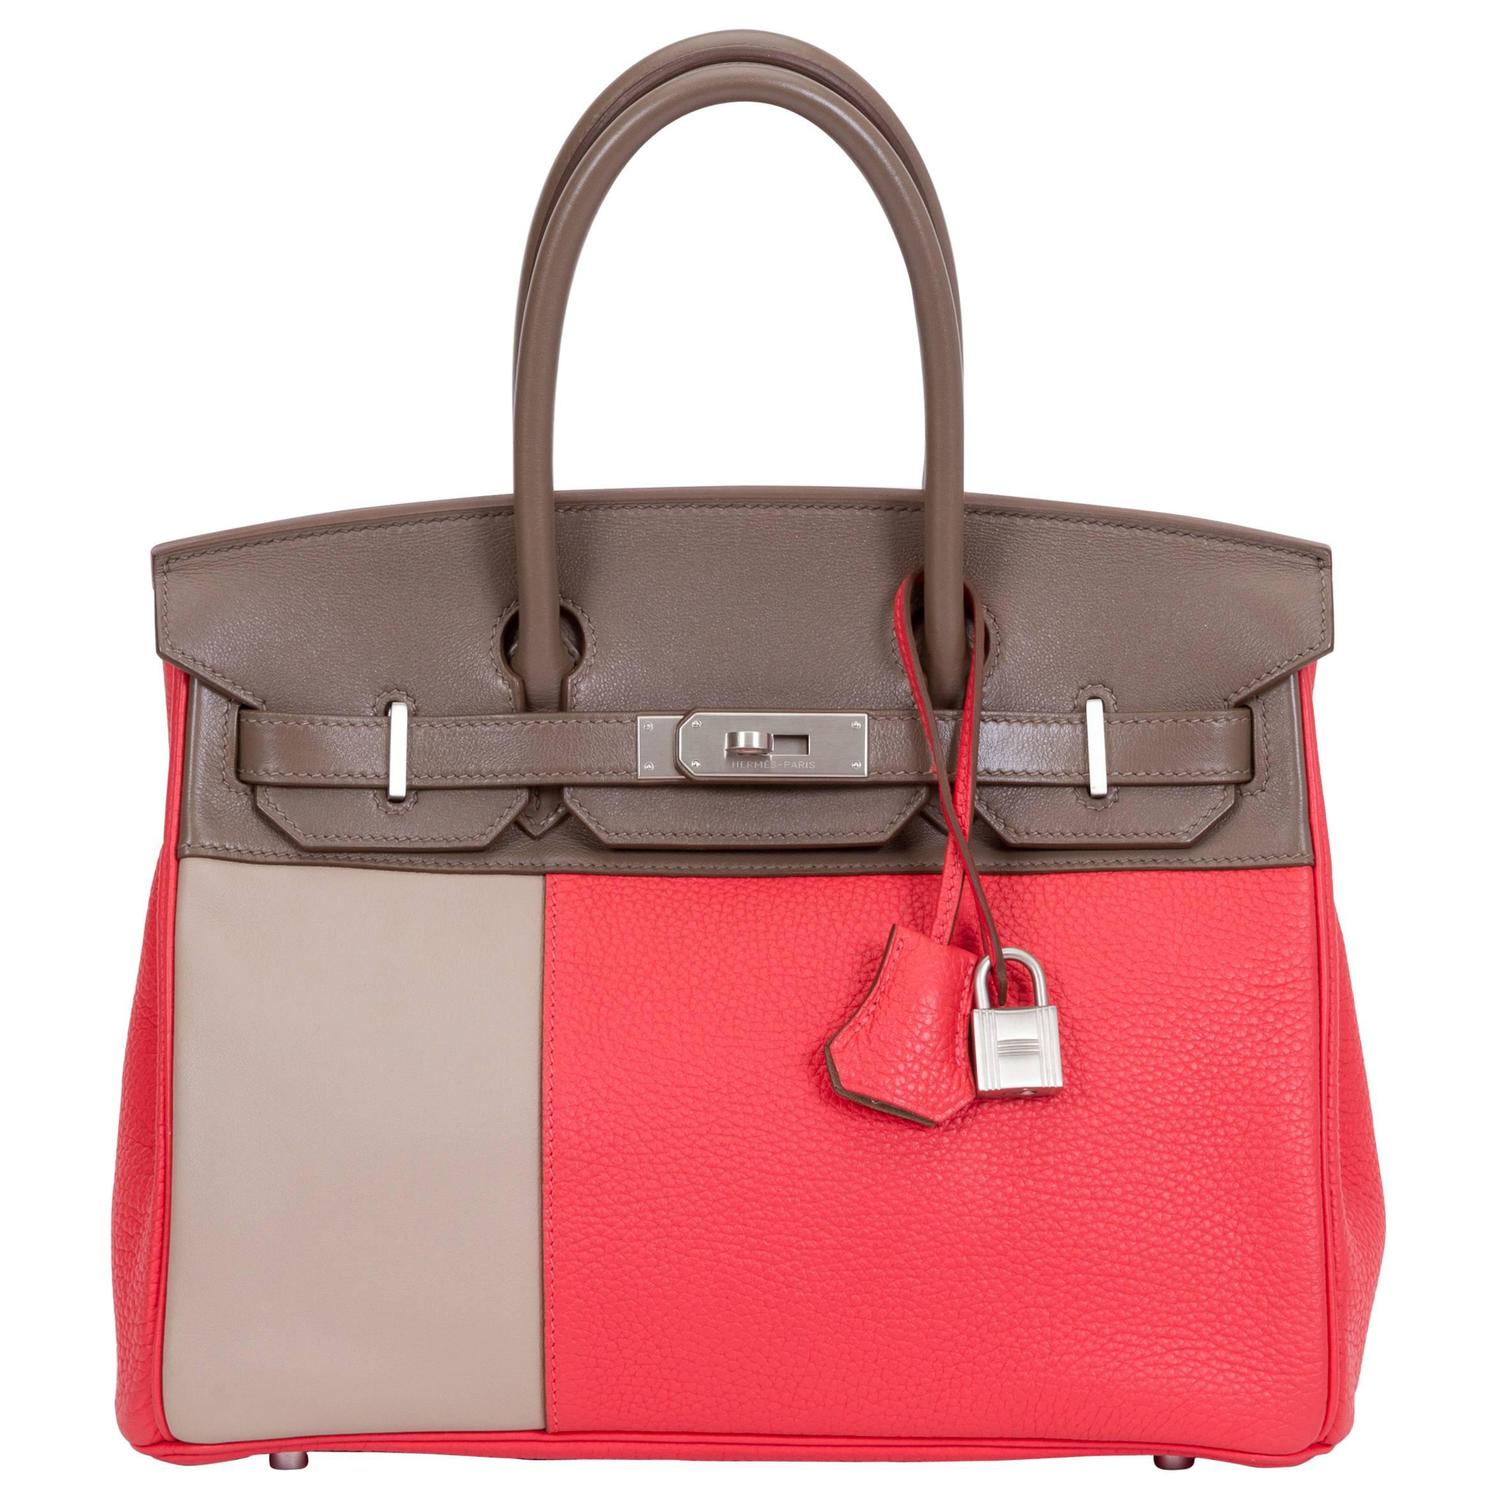 Hermès Limited Edition Birkin 30cm Tricolor Bag For Sale at 1stdibs